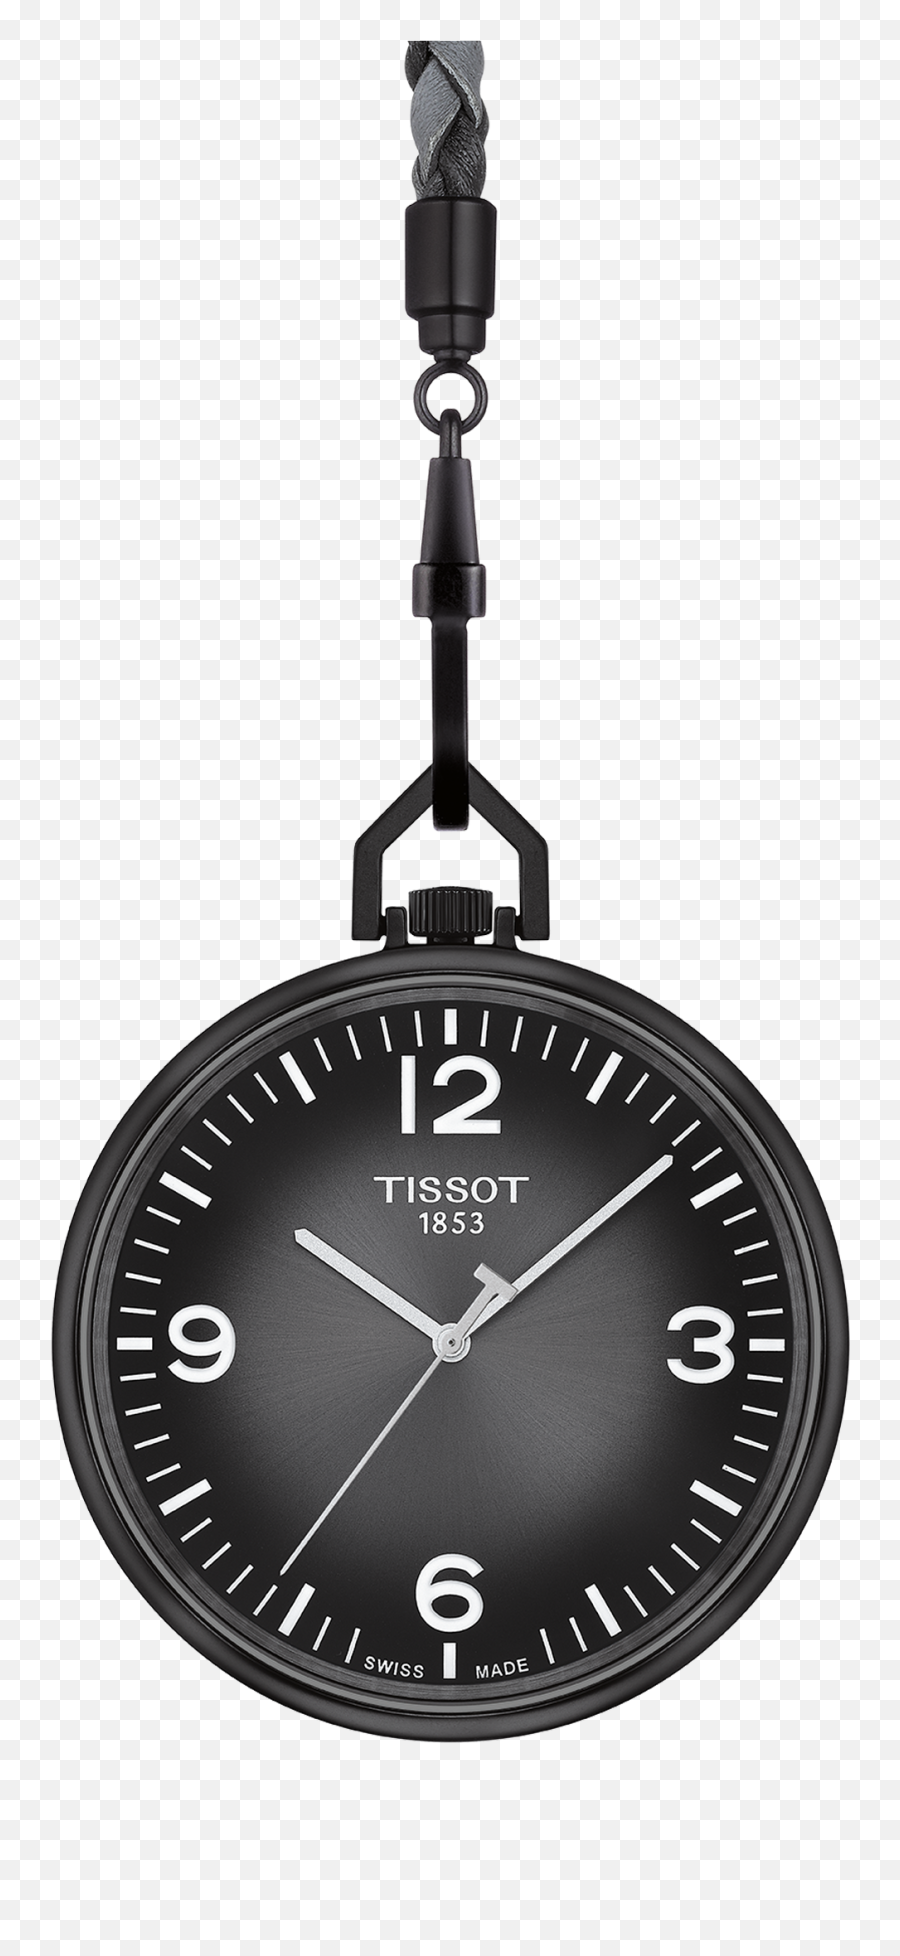 Tissot - Tissot Lepine Png,Pocket Watch Png